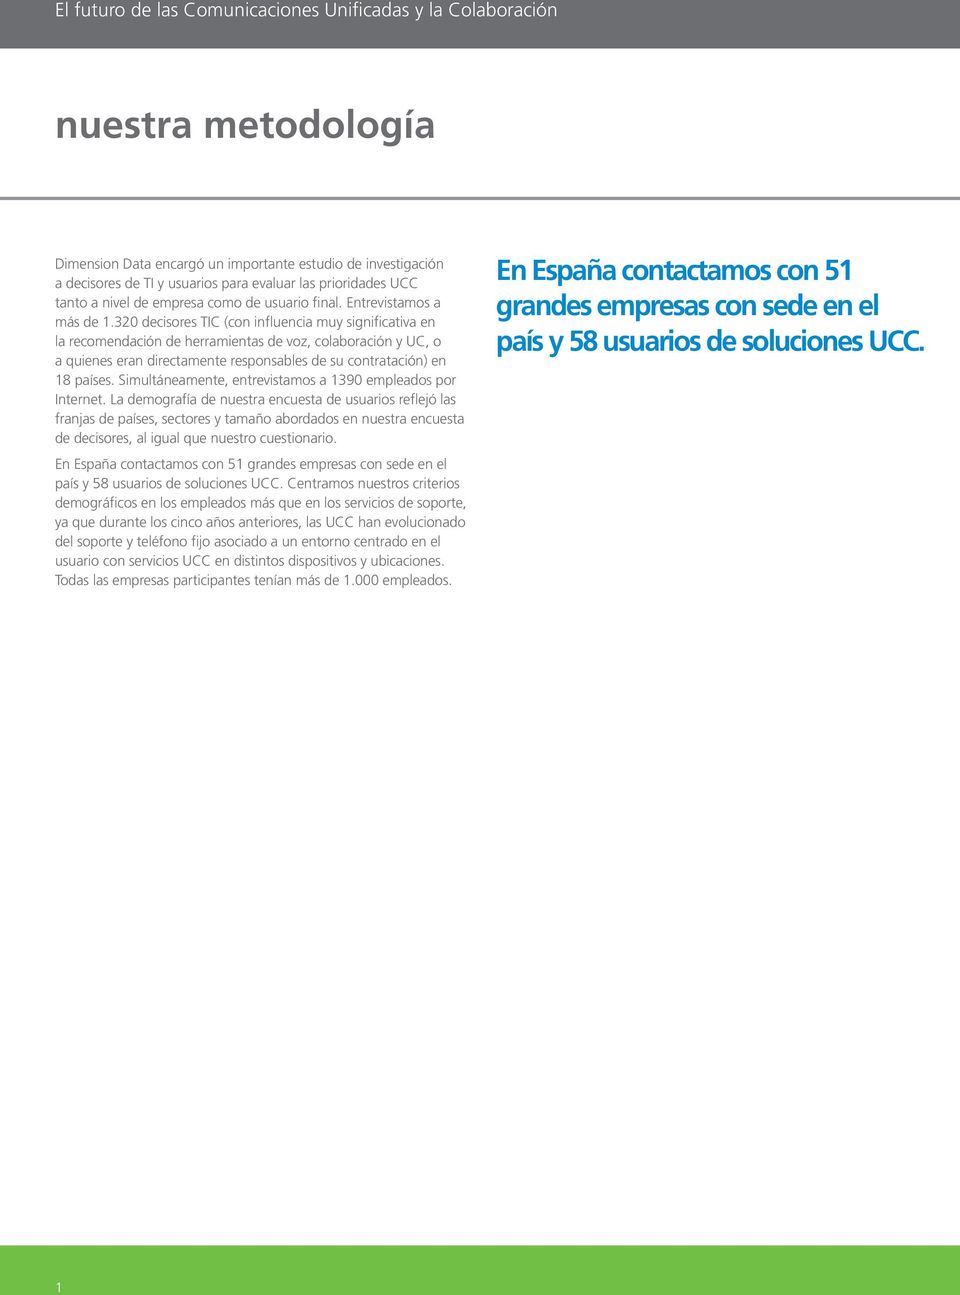 320 decisores TIC (con influencia muy significativa en la recomendación de herramientas de voz, colaboración y UC, o a quienes eran directamente responsables de su contratación) en 18 países.